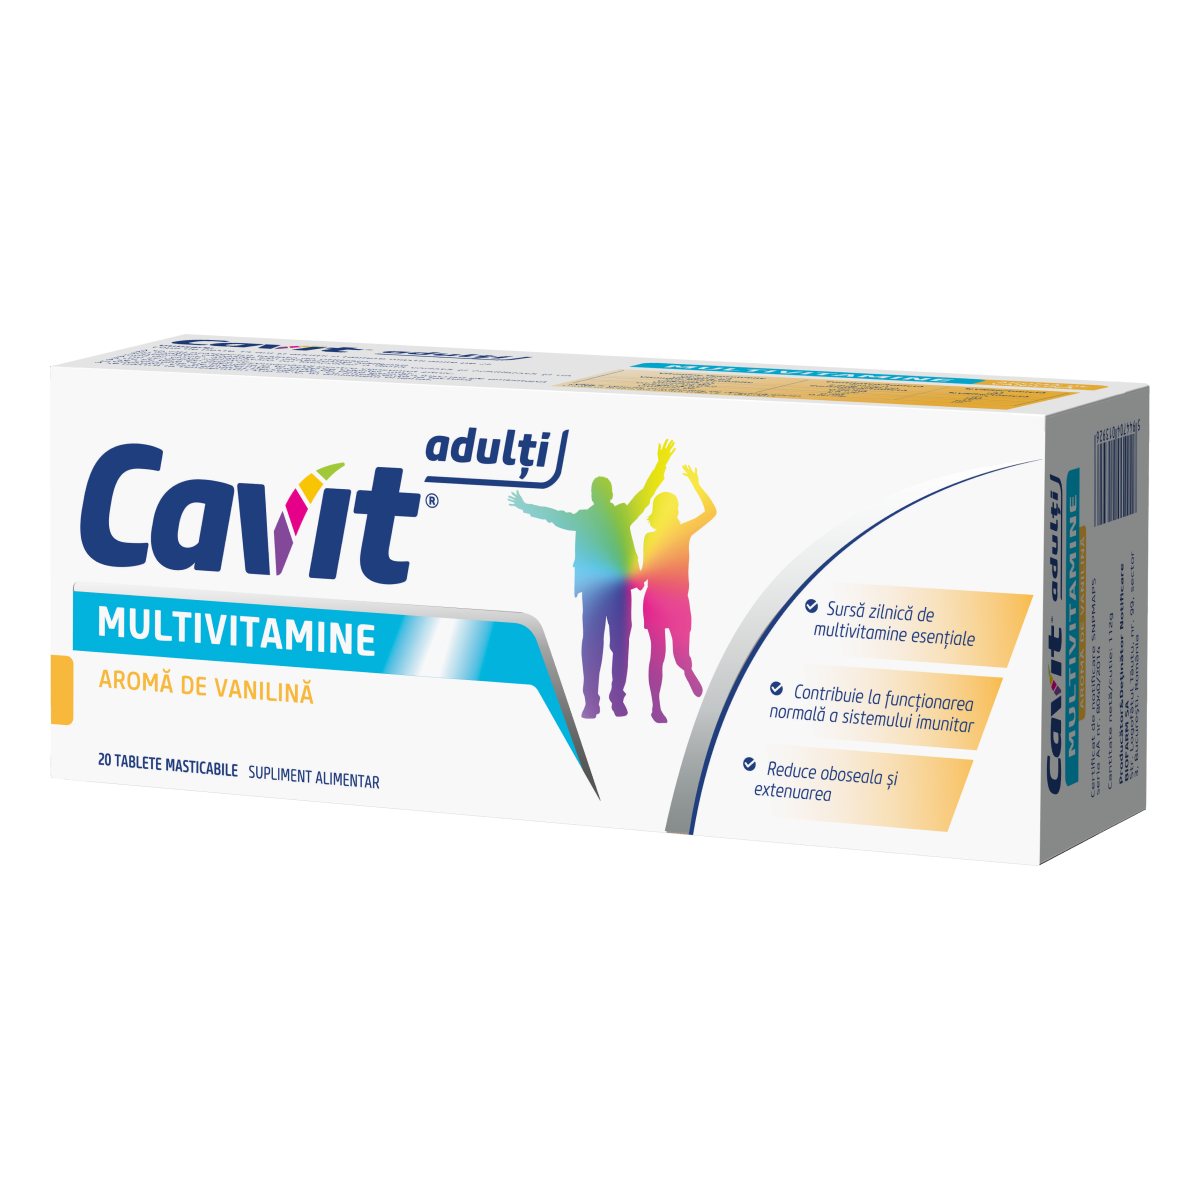 Uz general - Cavit adulti multivitamine cu aroma de vanilie, 20 tablete, Biofarm, sinapis.ro